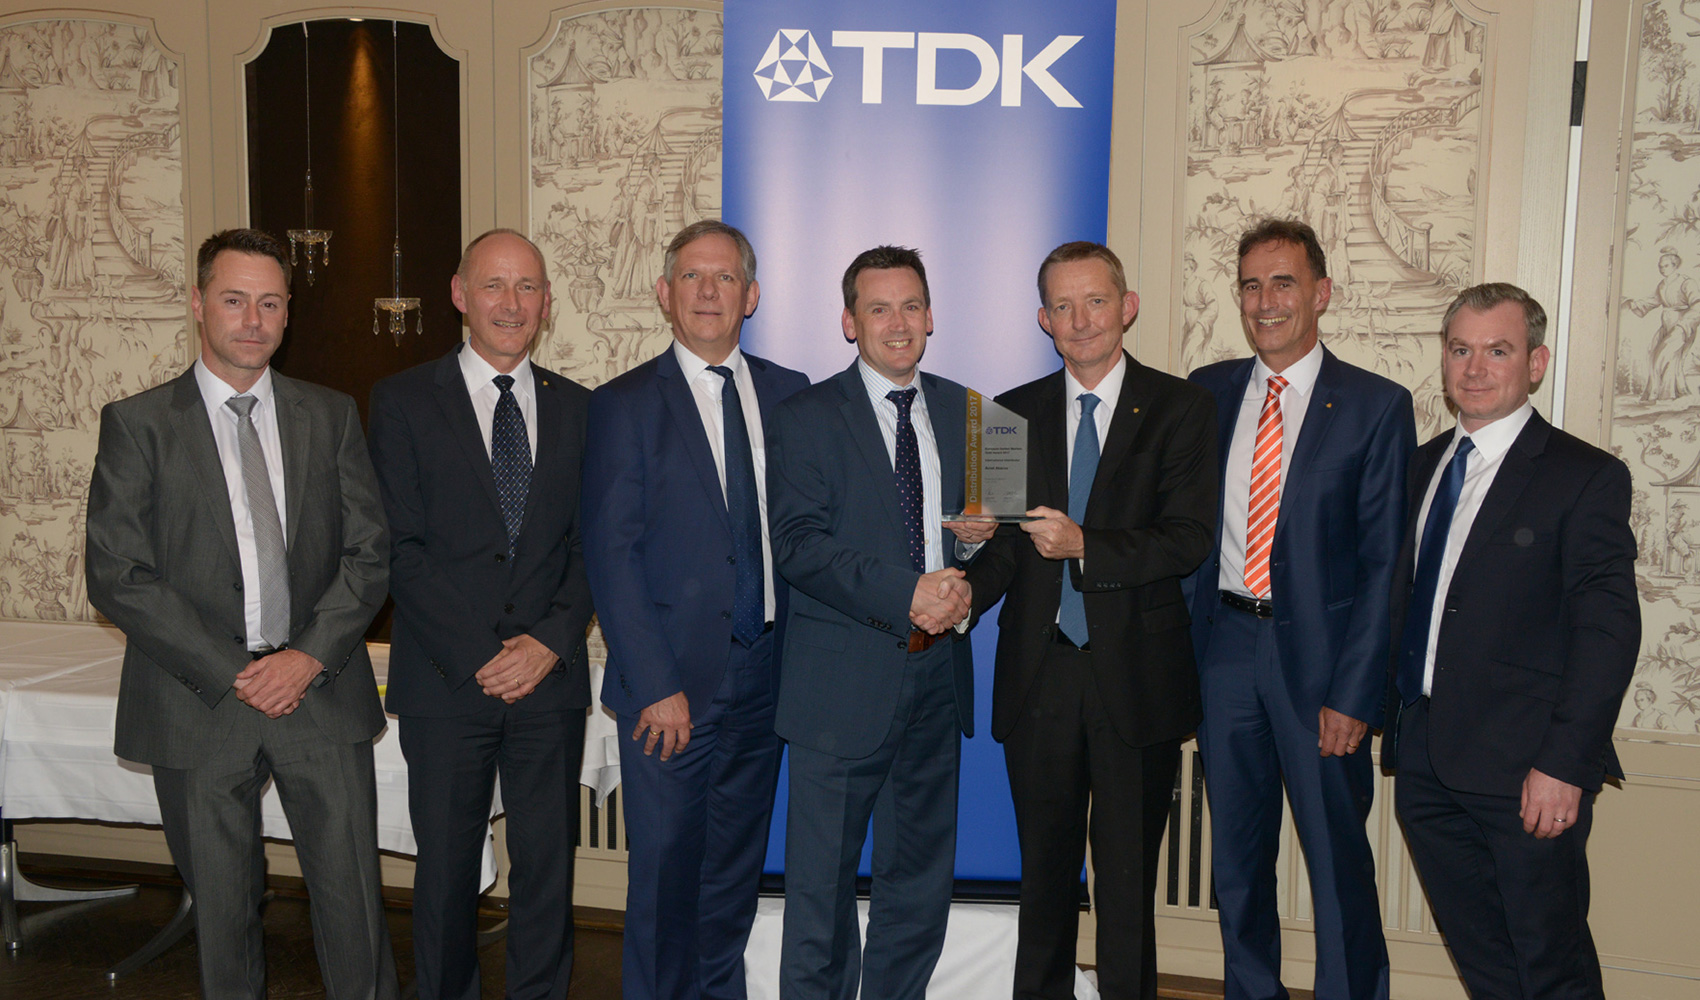 TDK destaca el aumento de ventas, el liderazgo y la excelencia tcnica del distribuidor Avnet Abacus en sus premios anuales...